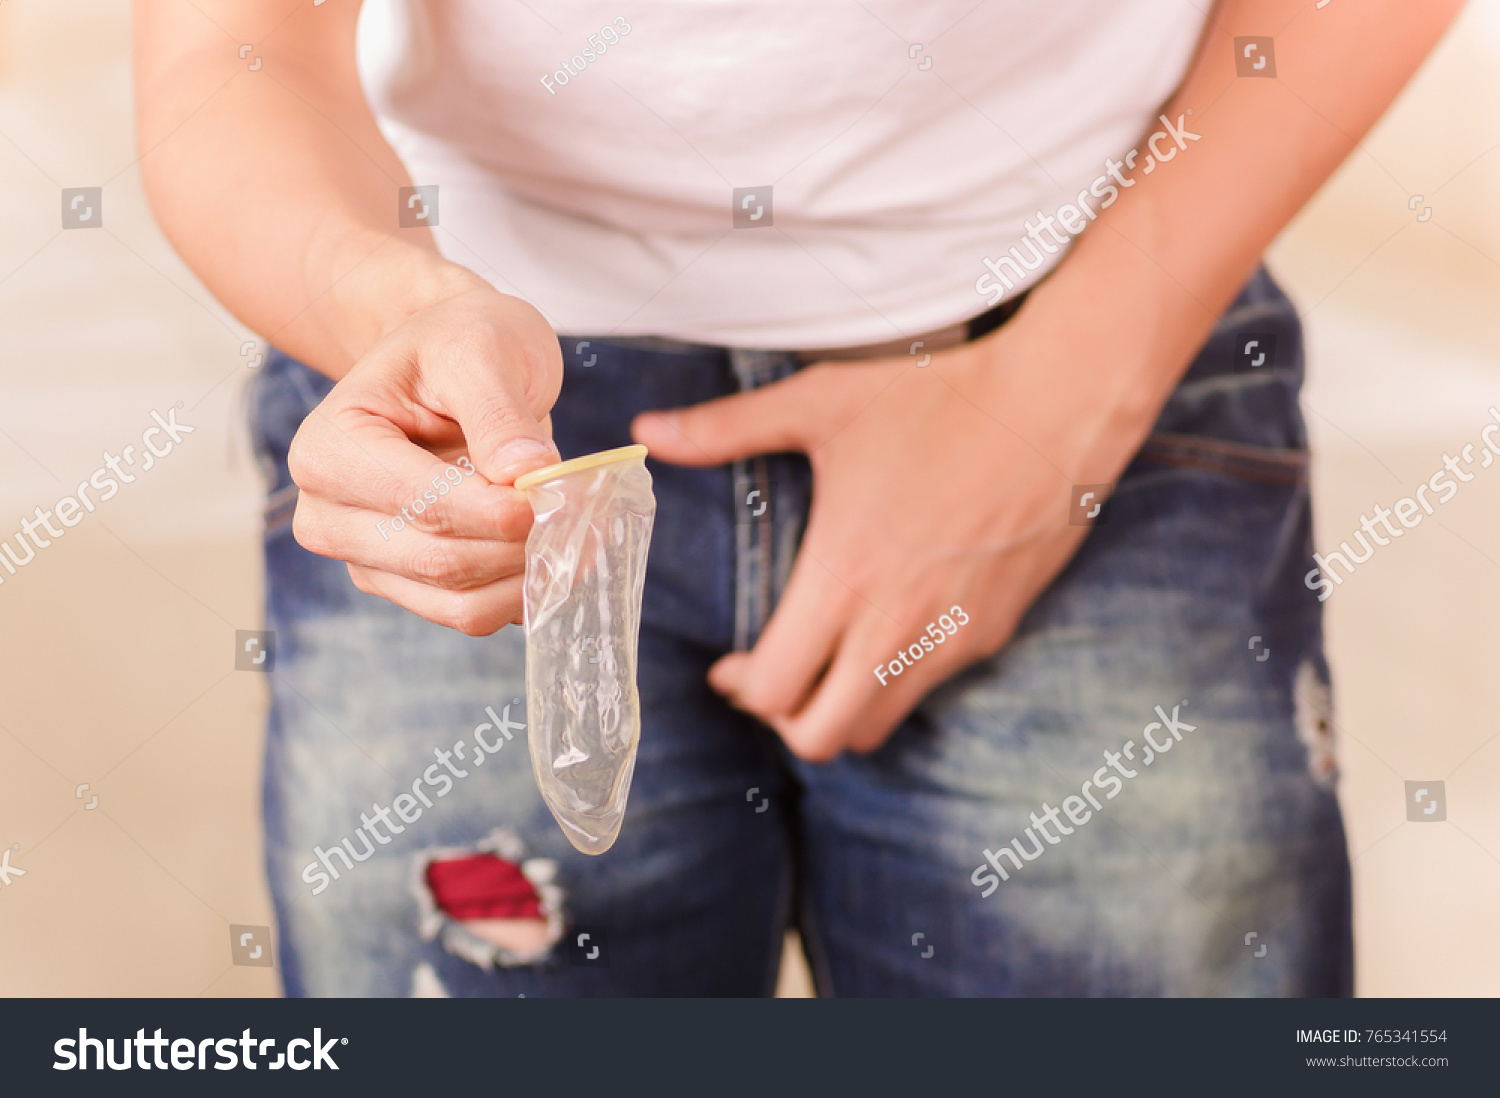 можно ли одевать презерватив на закрытый член фото 43